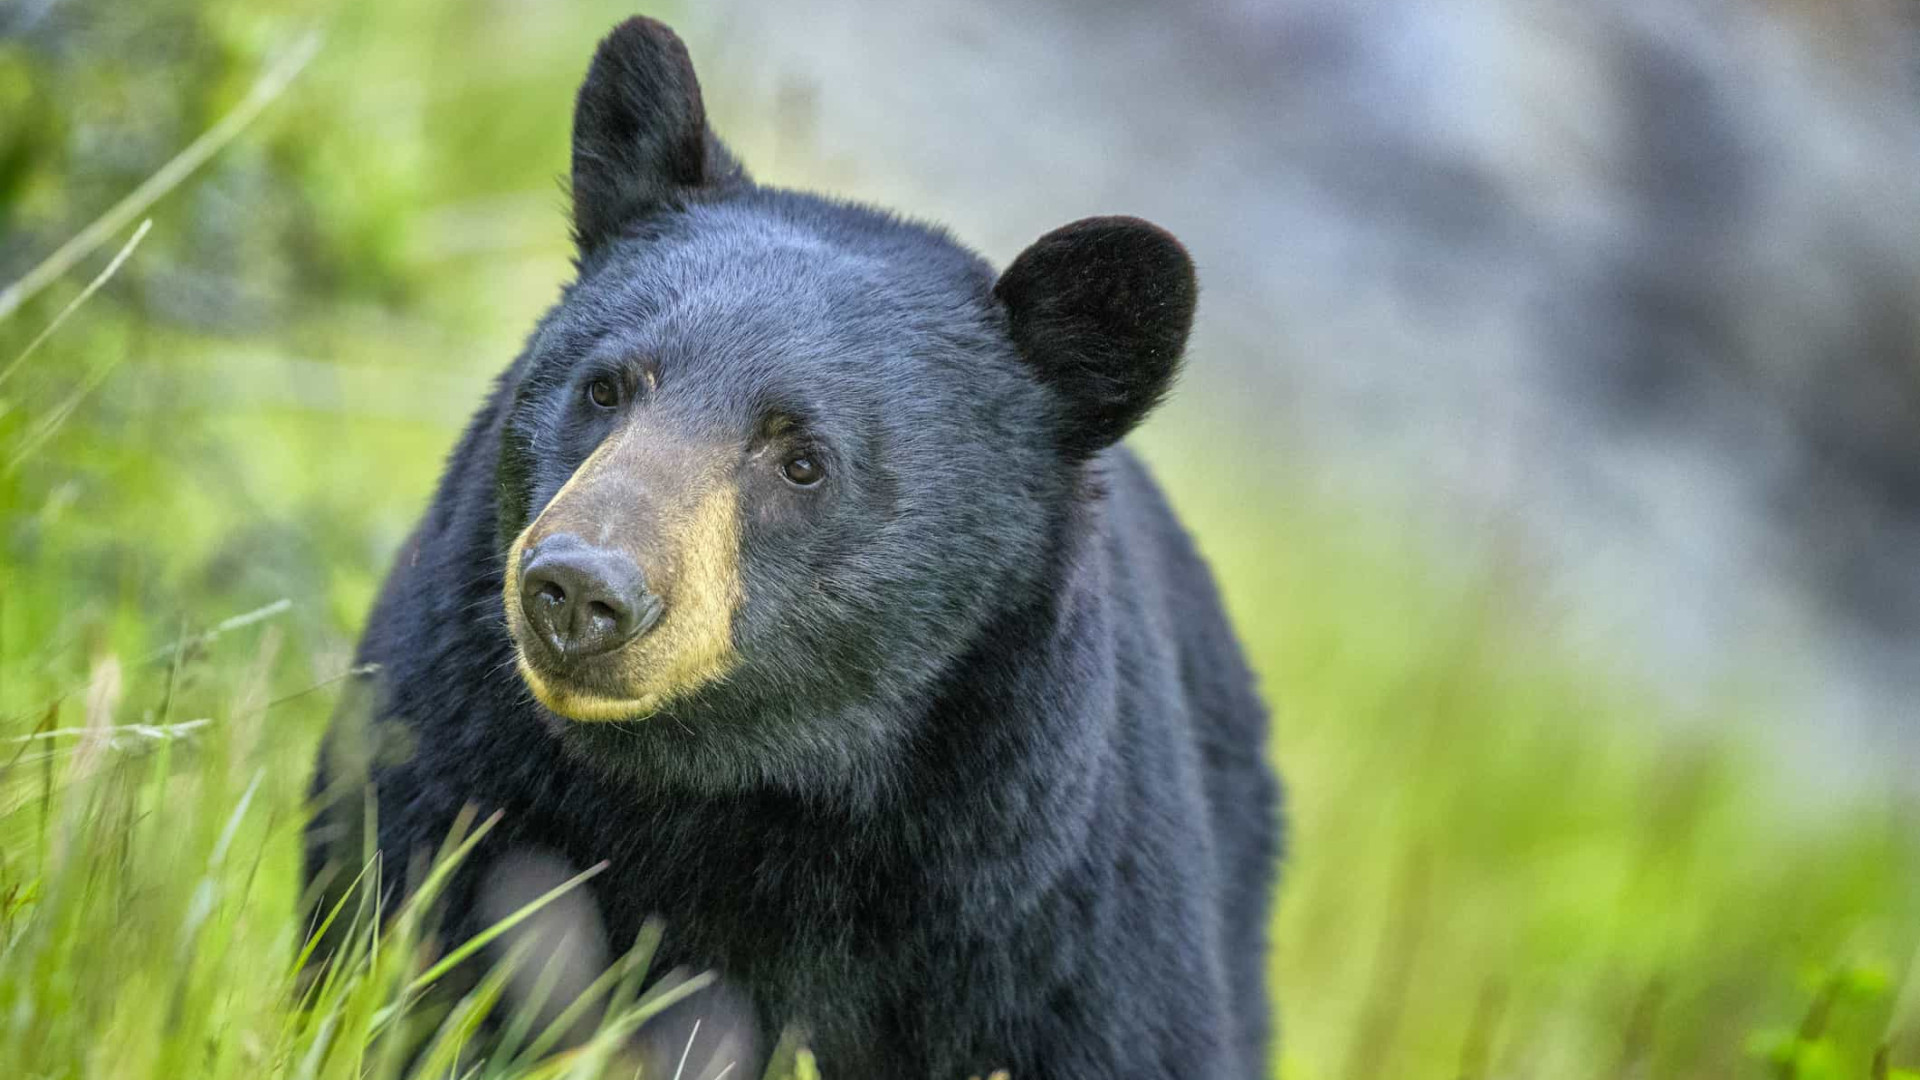 Cabeça humana encontrada após urso ser visto com botas penduradas na boca